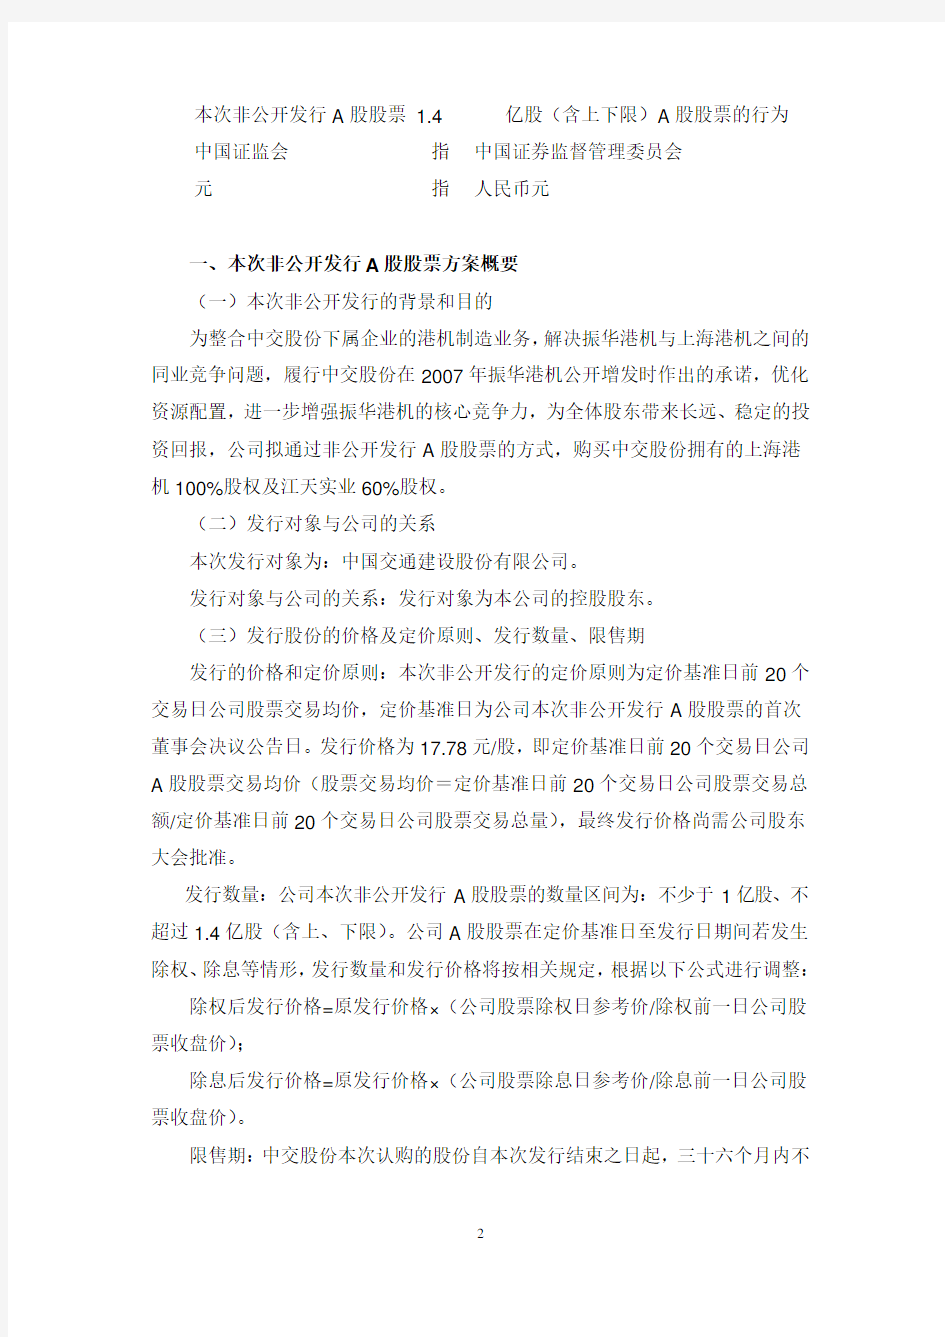 上海振华港口机械(集团)股份有限公司非公开发行A股股票预案